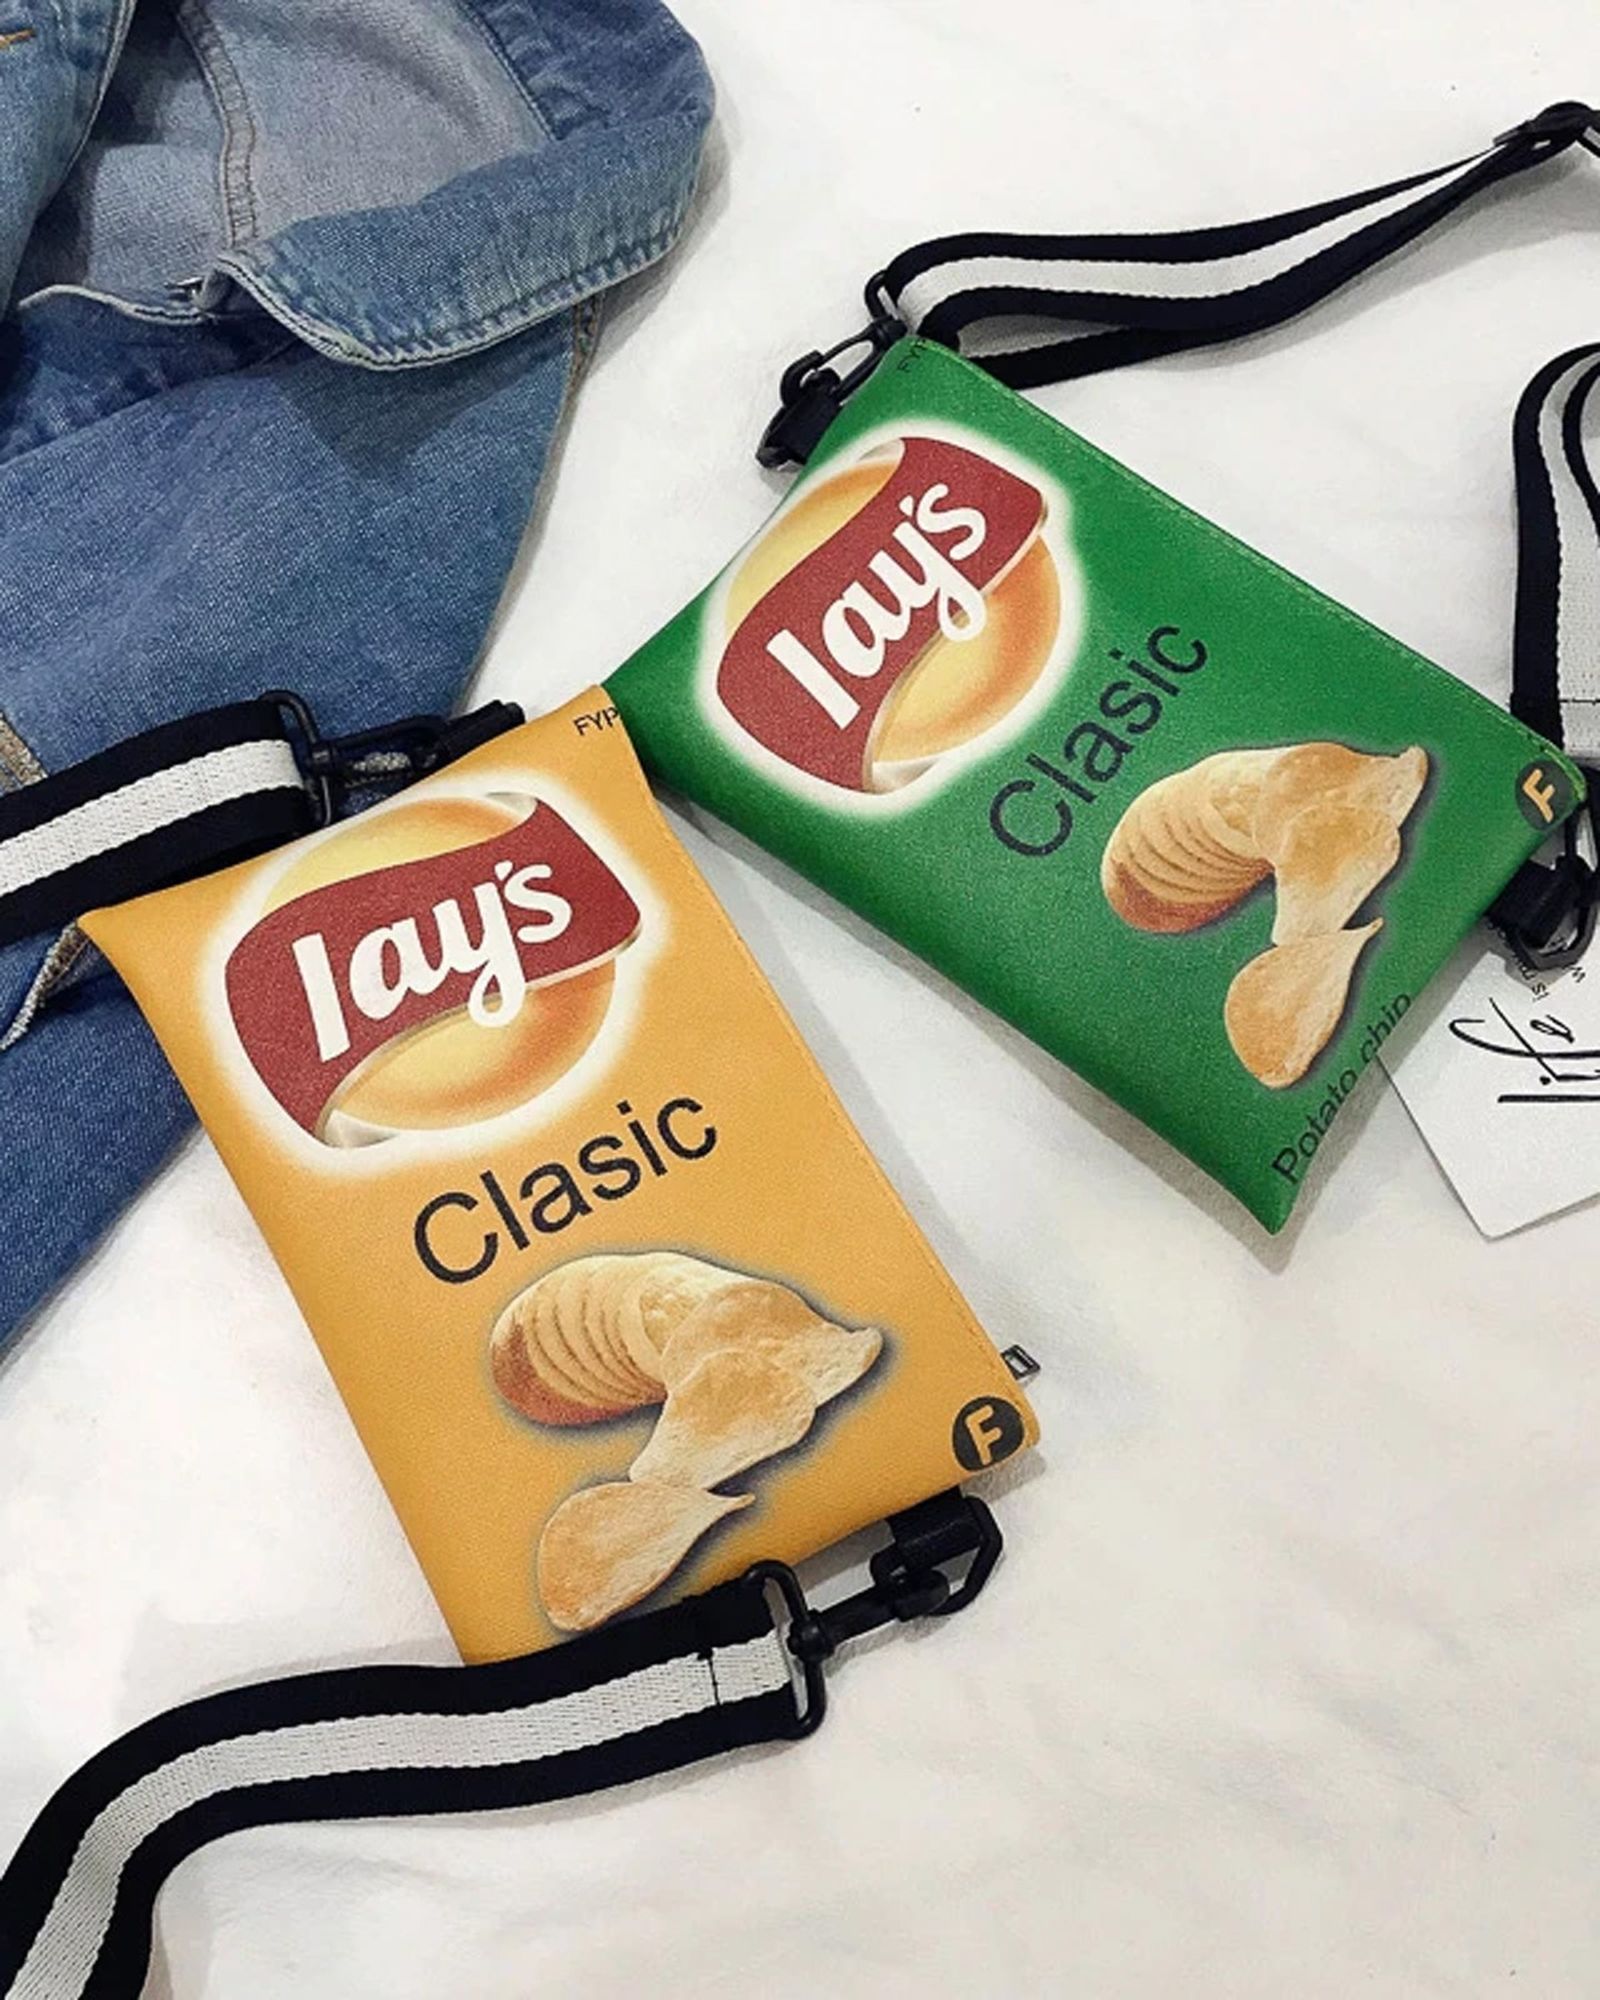 balenciaga-lays-potato-chip-bag-aliexpress-02